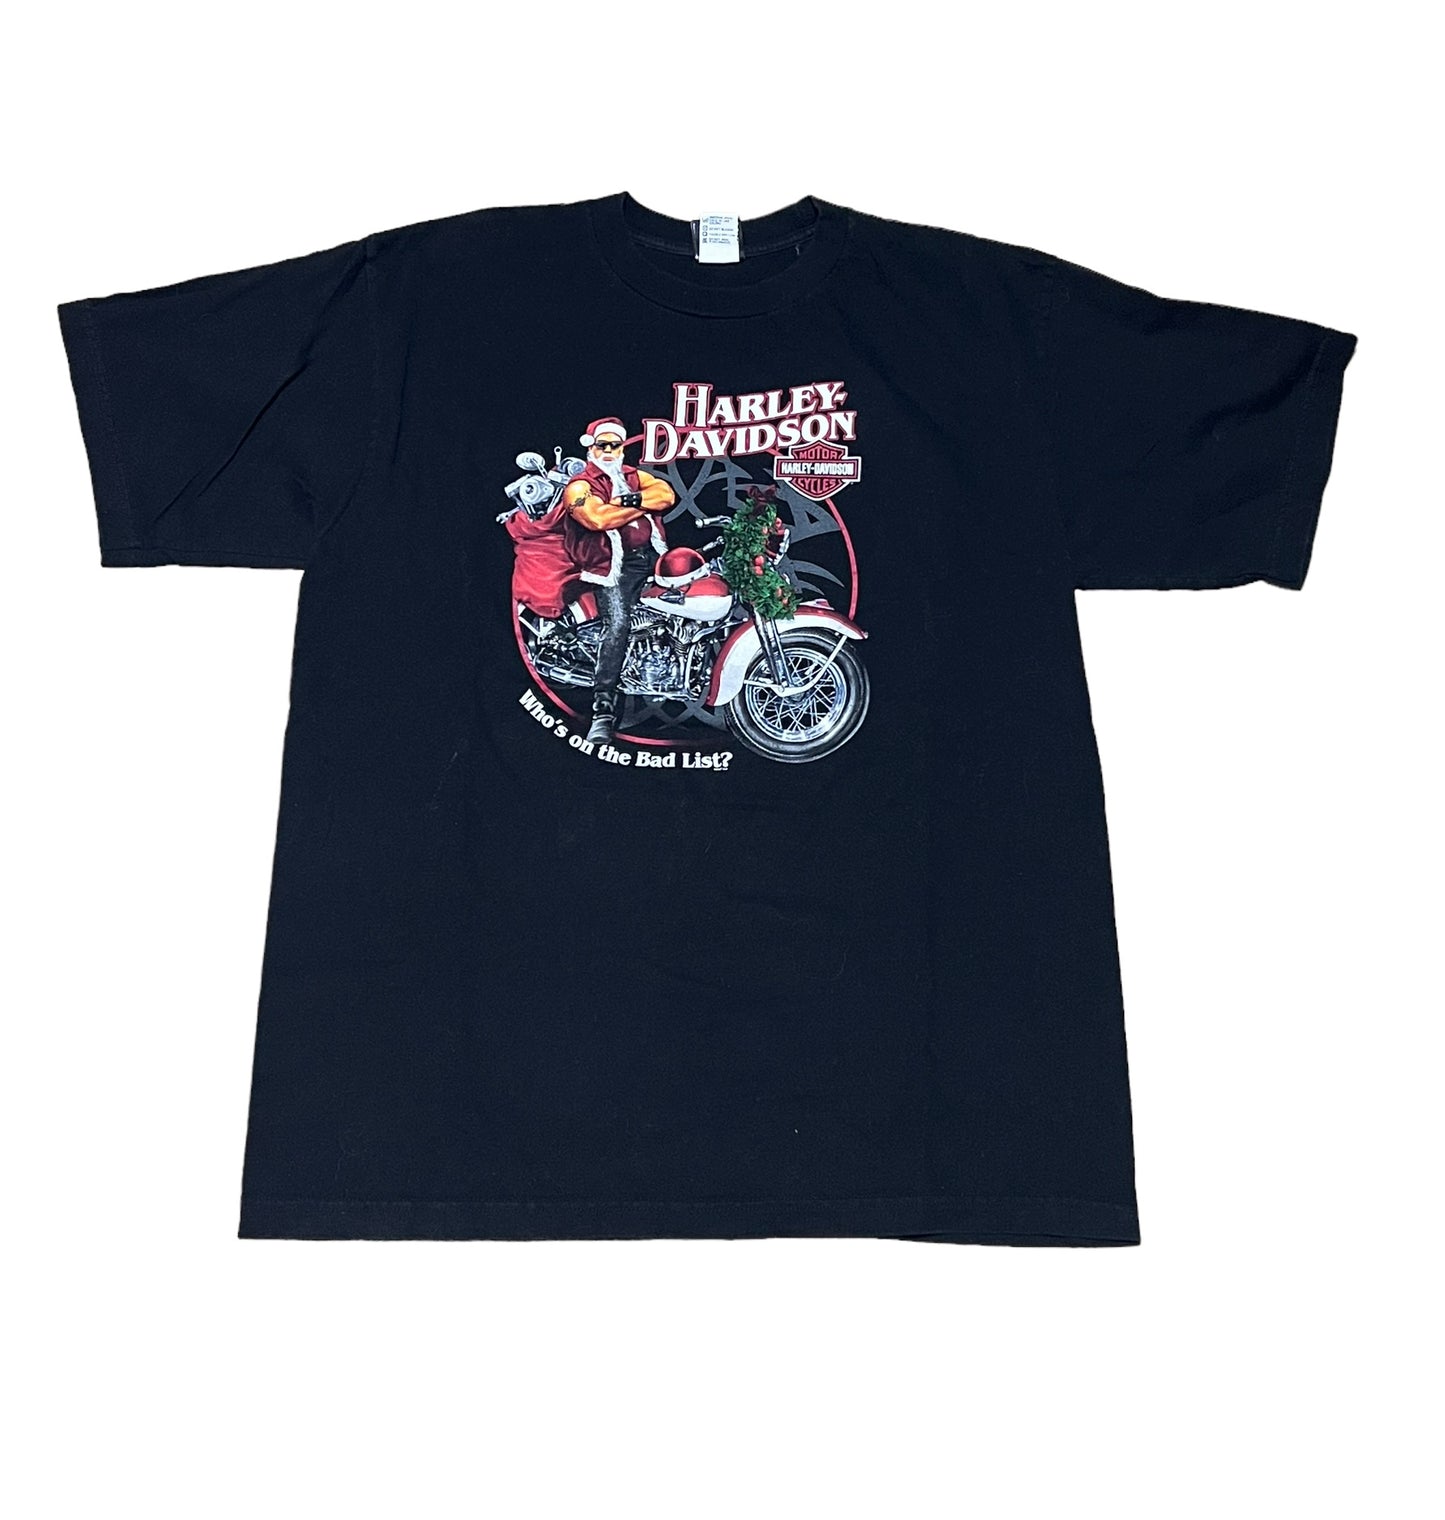 Vintage Harley Davidson 'Bad List' T Shirt